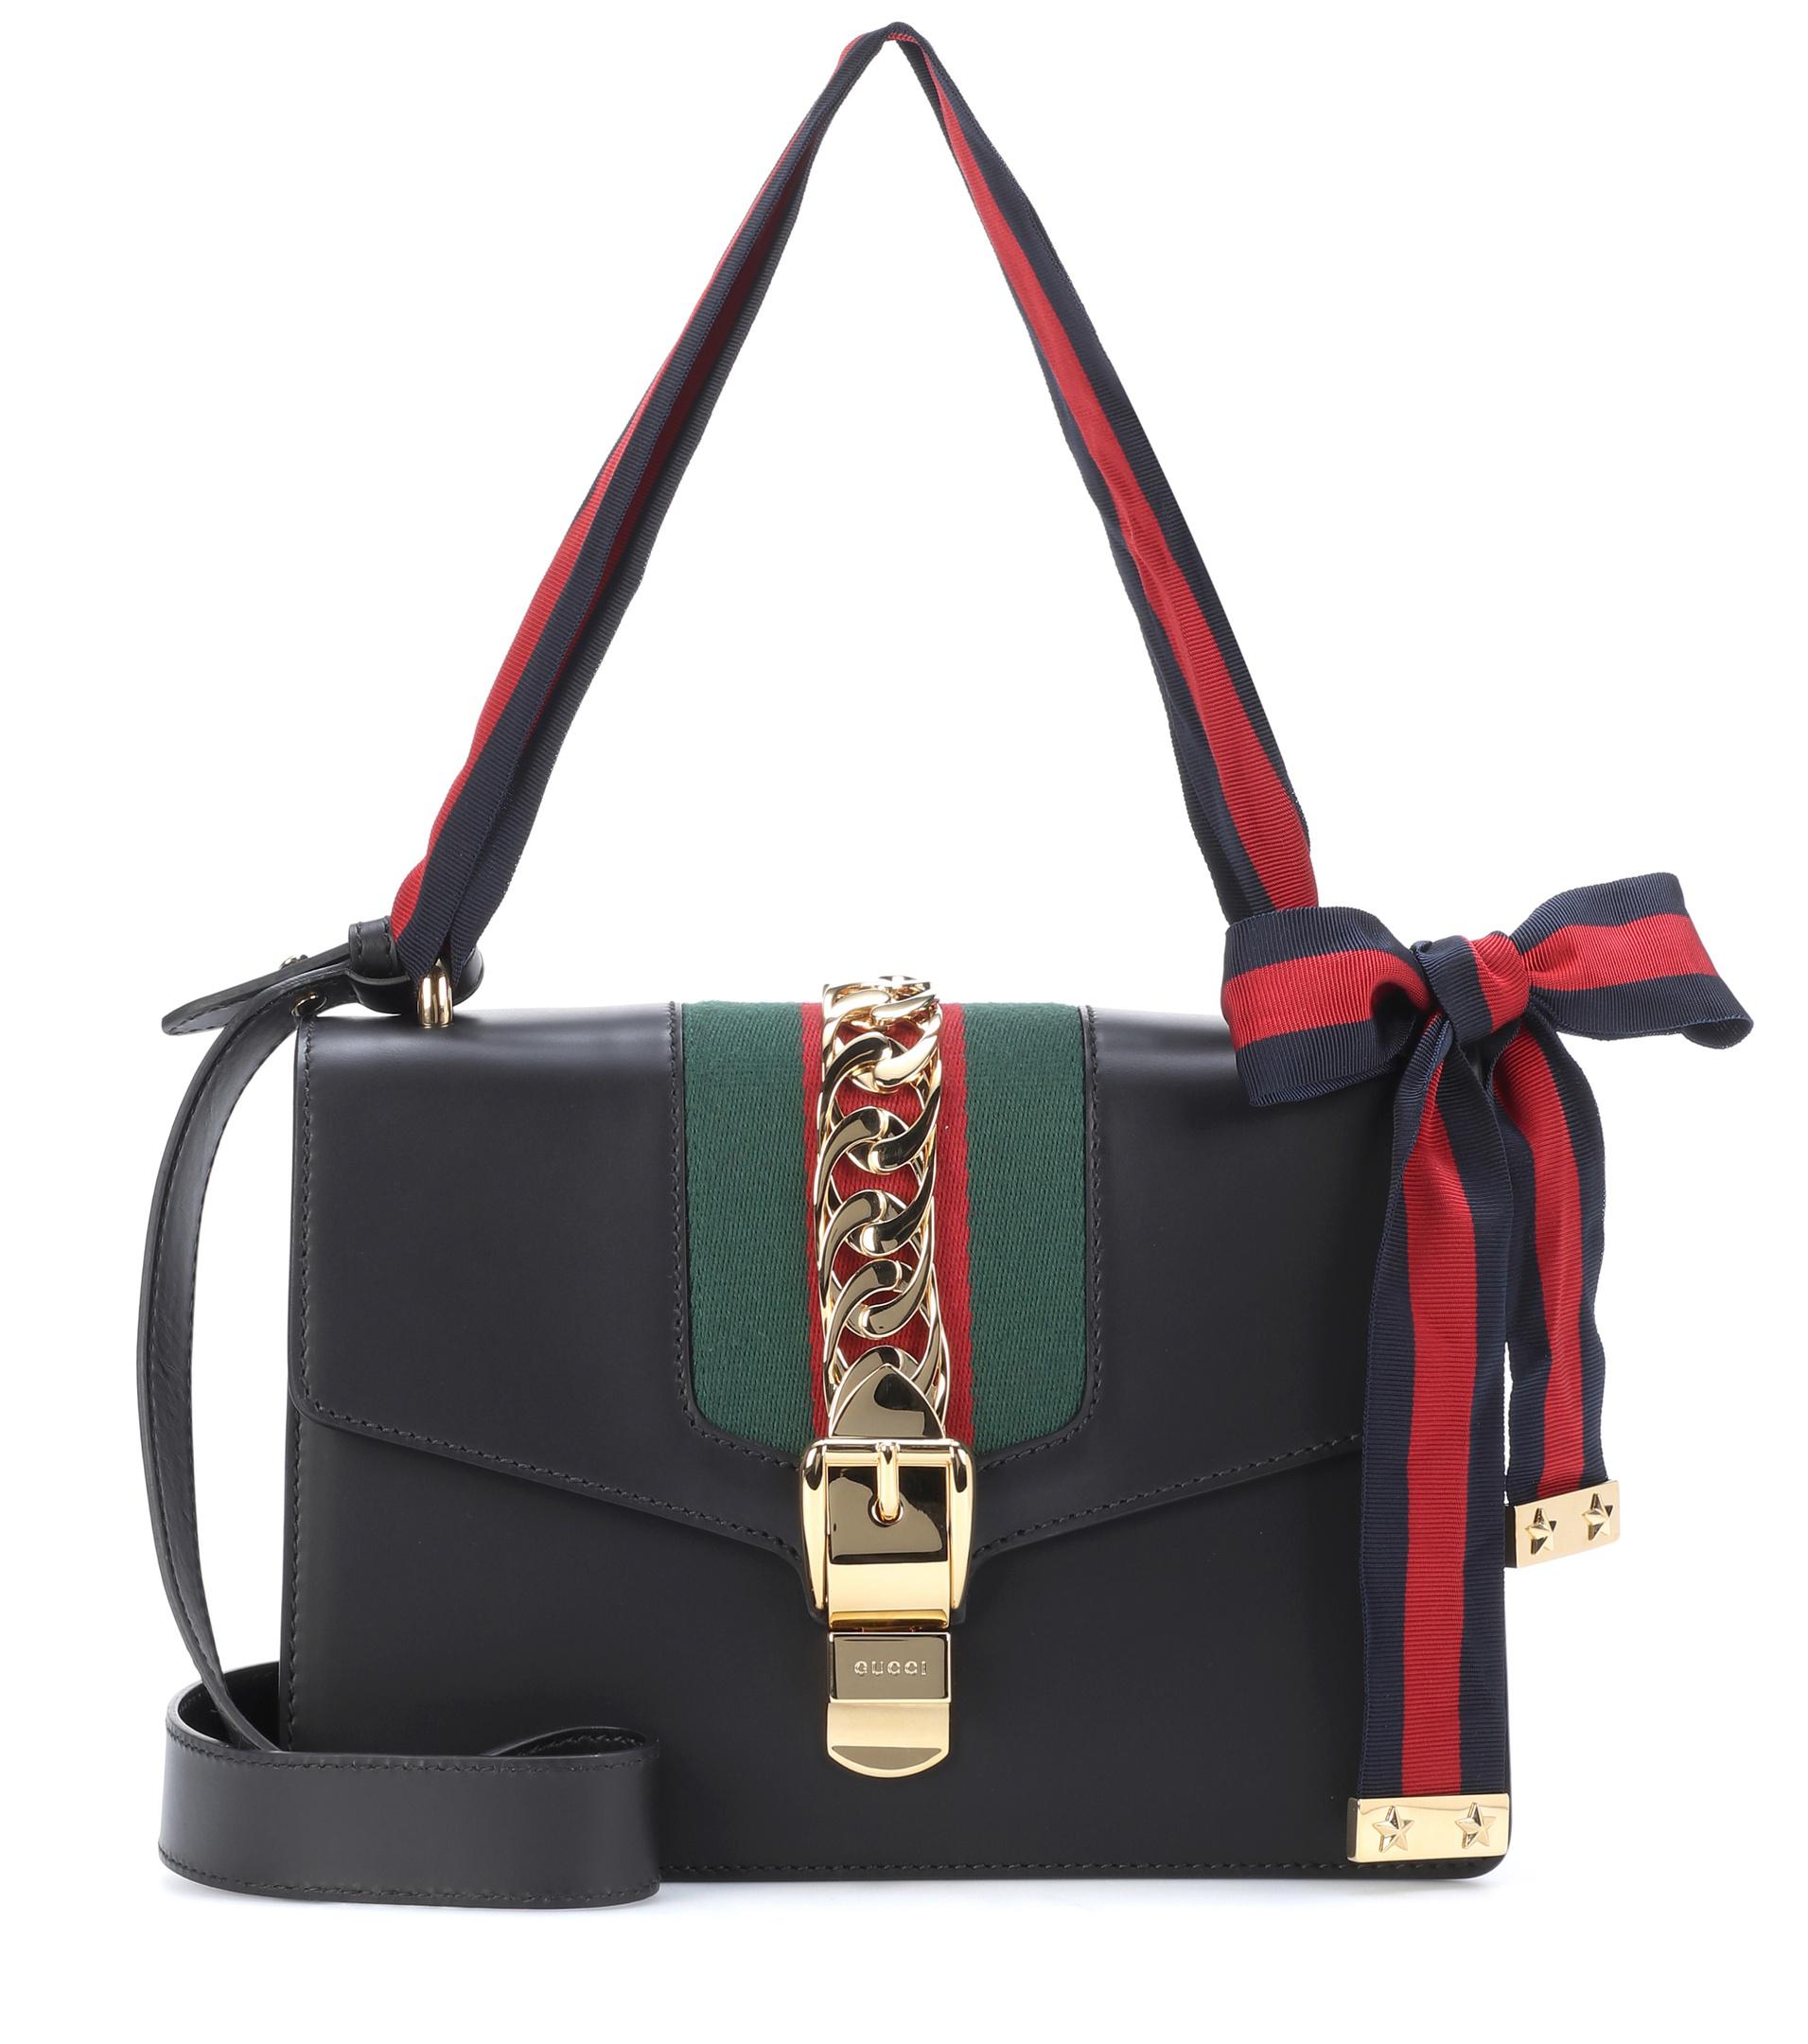 Gucci Sylvie Leather Shoulder Bag in Black - Lyst